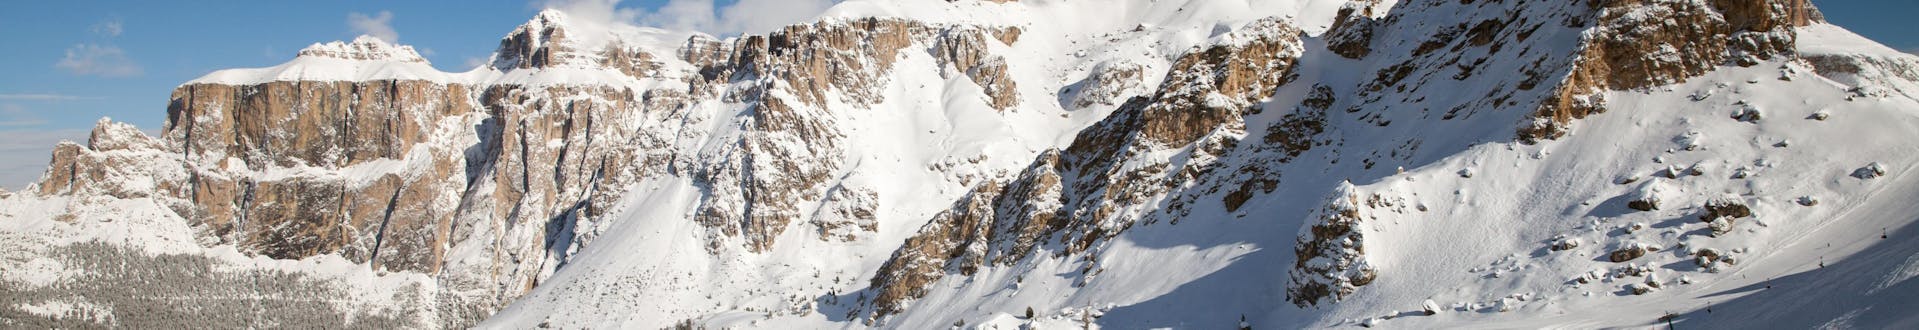 Skigebiet in Canazei, Italien, wo Sie Skikurse buchen können.